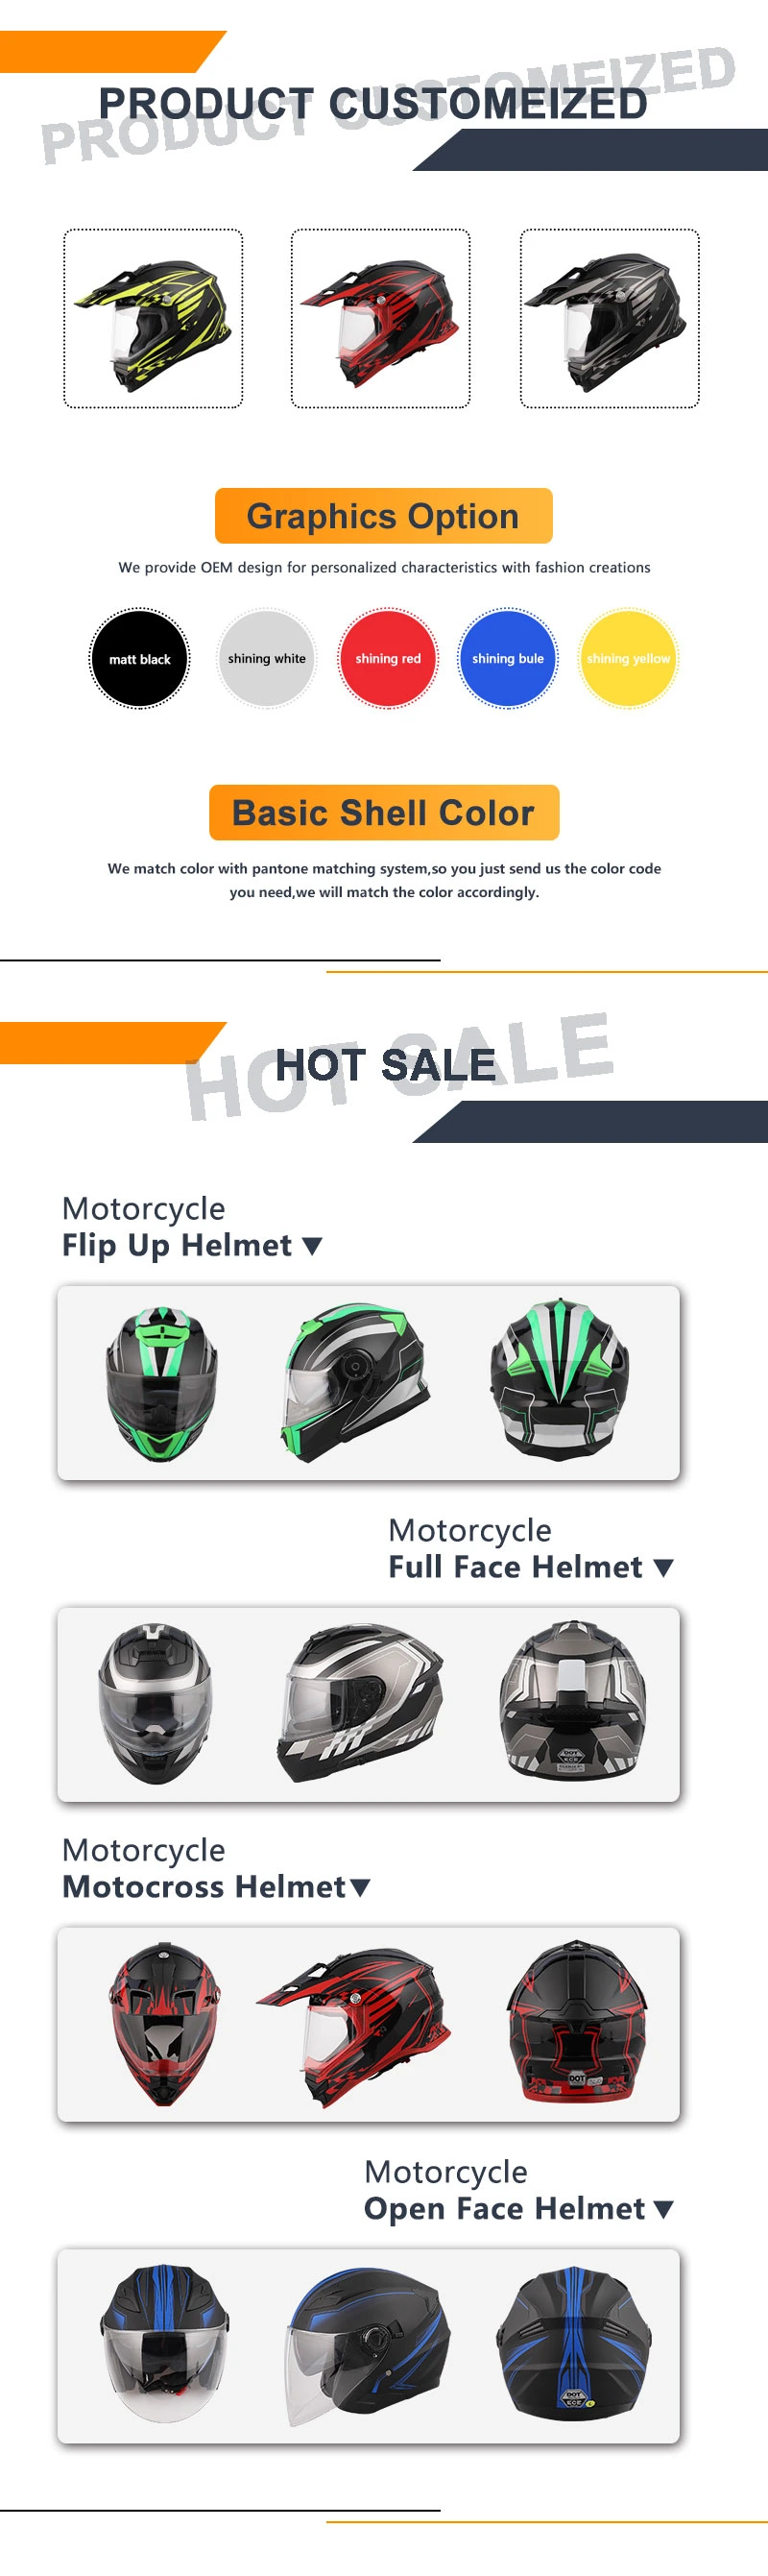 Top Fox Motorcycle Helmet off Road Full Face Helmet for Dirt Bikes DOT